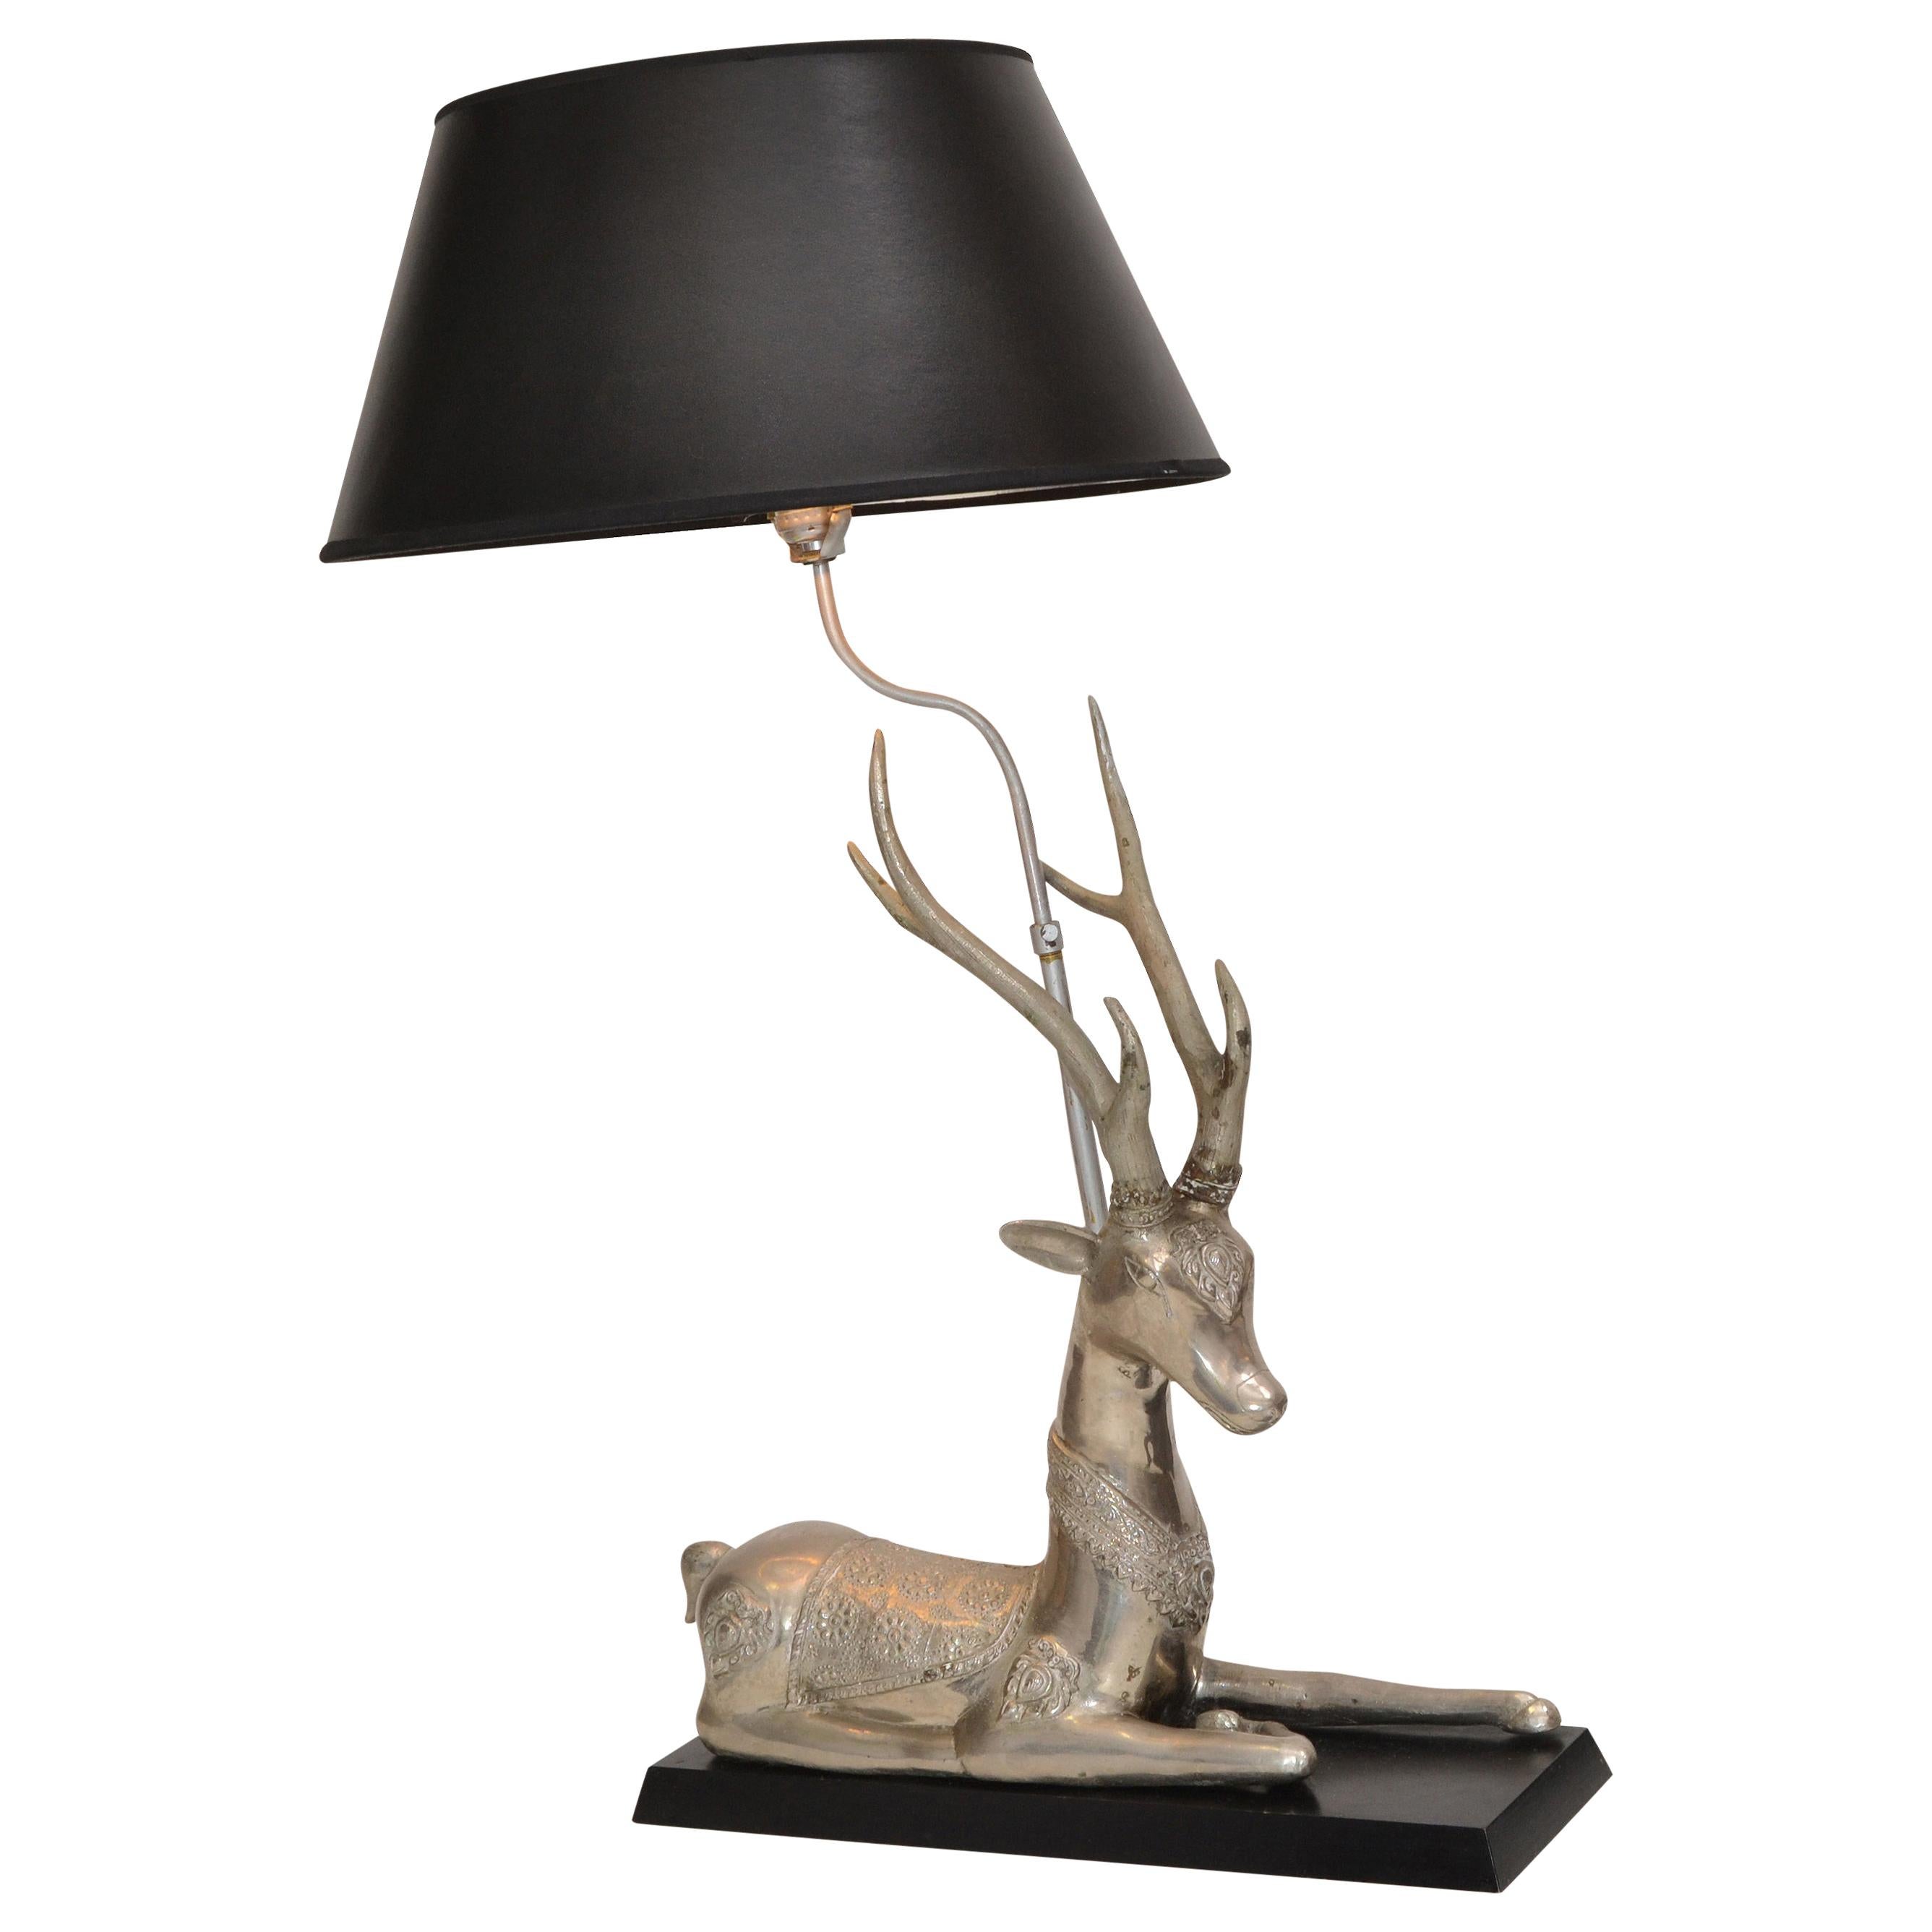 Anmutige versilberte Tischlampe in form eines ruhenden Hirsches, Bronze, Holzsockel Silber und schwarzer Schirm